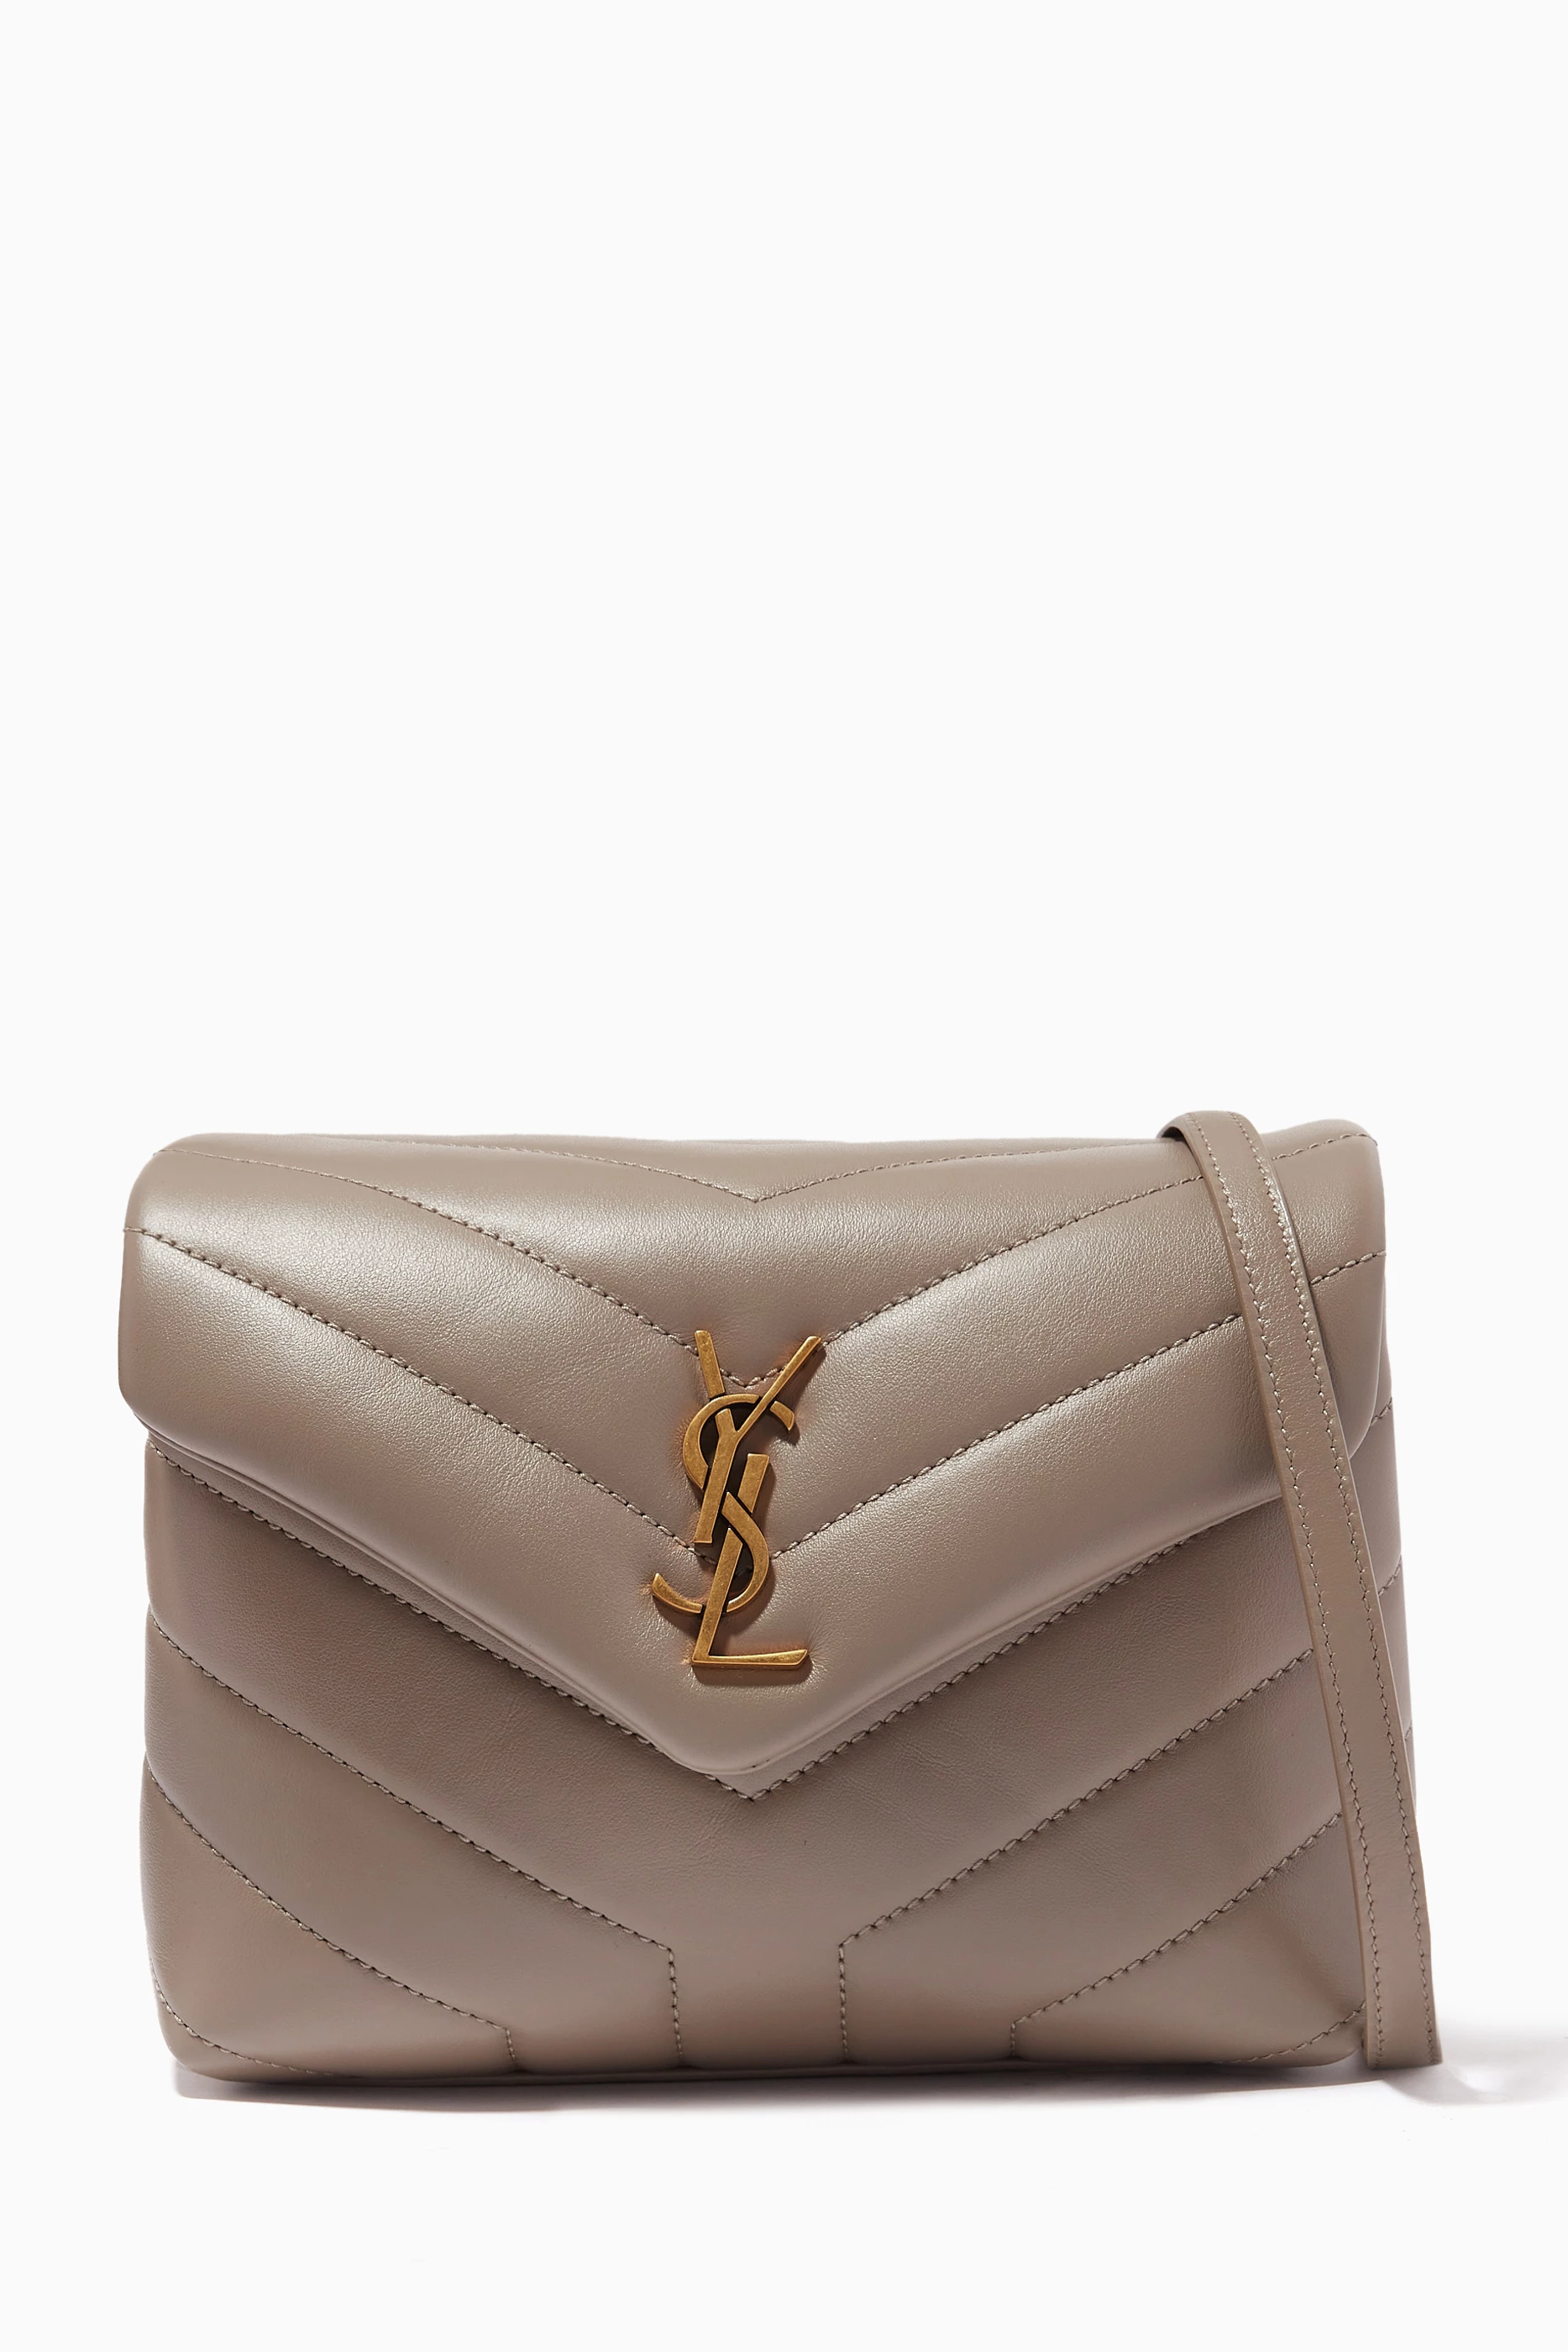 Luxury Handbag Shoulder Bag Brand LOULOU Y Shaped Leather